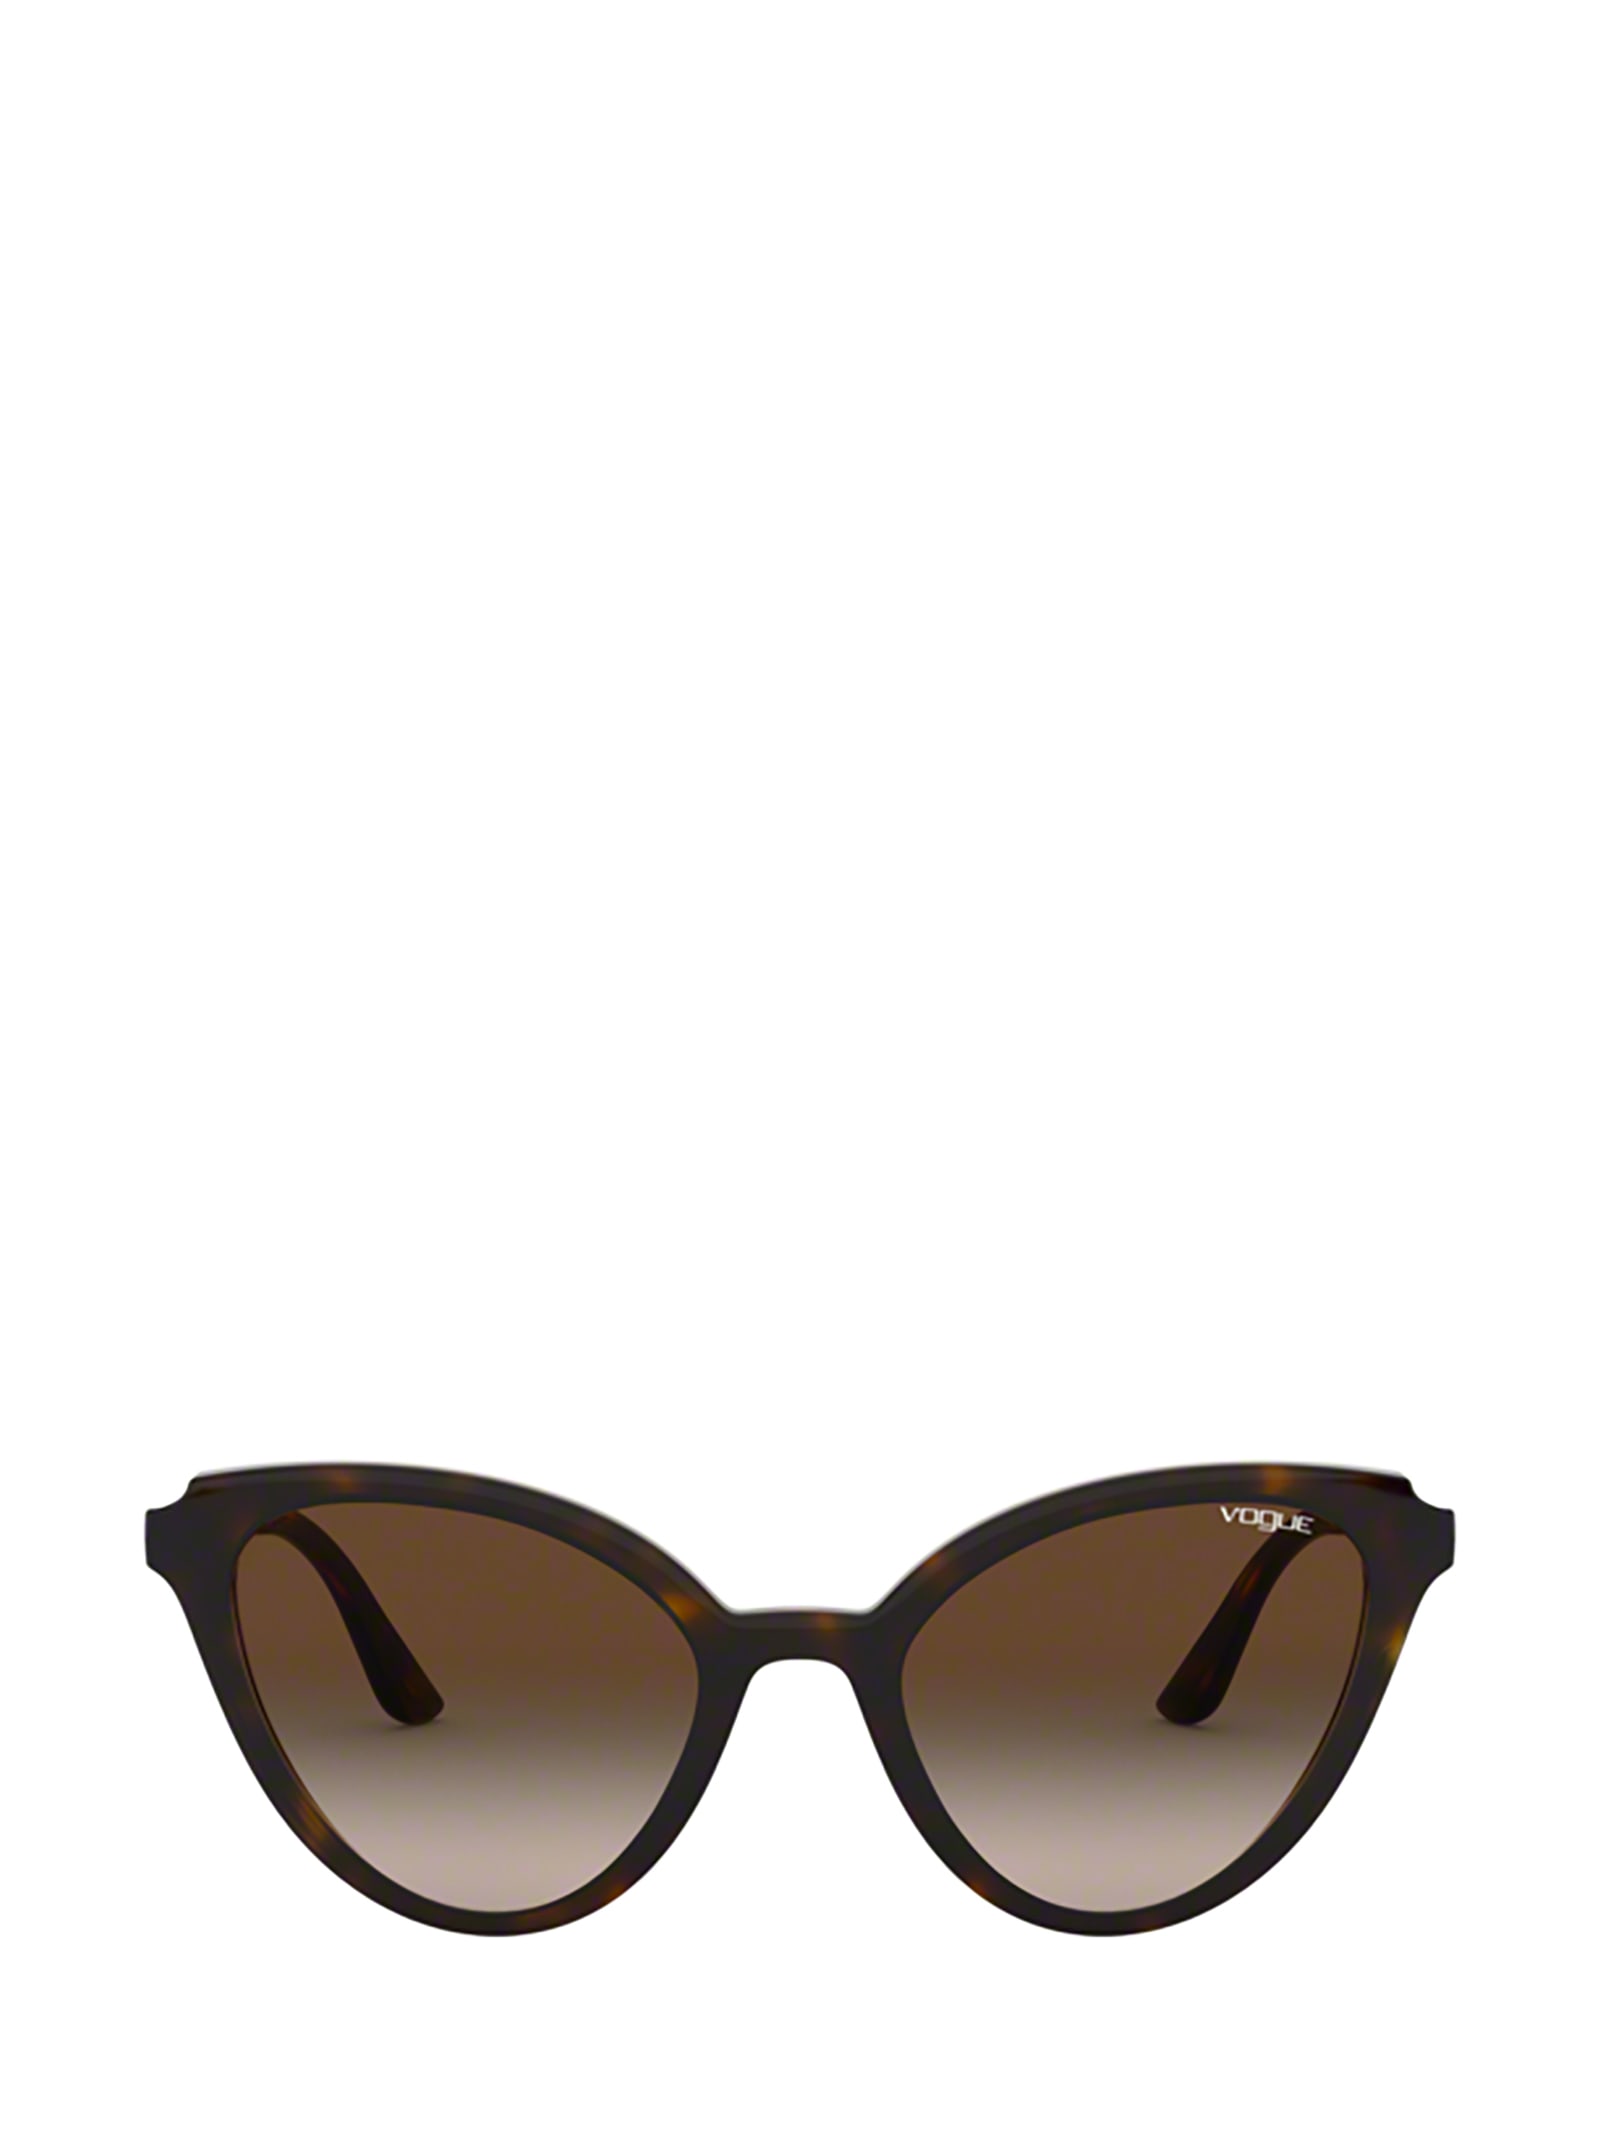 Vogue Eyewear Vogue Vo5294s Dark Havana Sunglasses